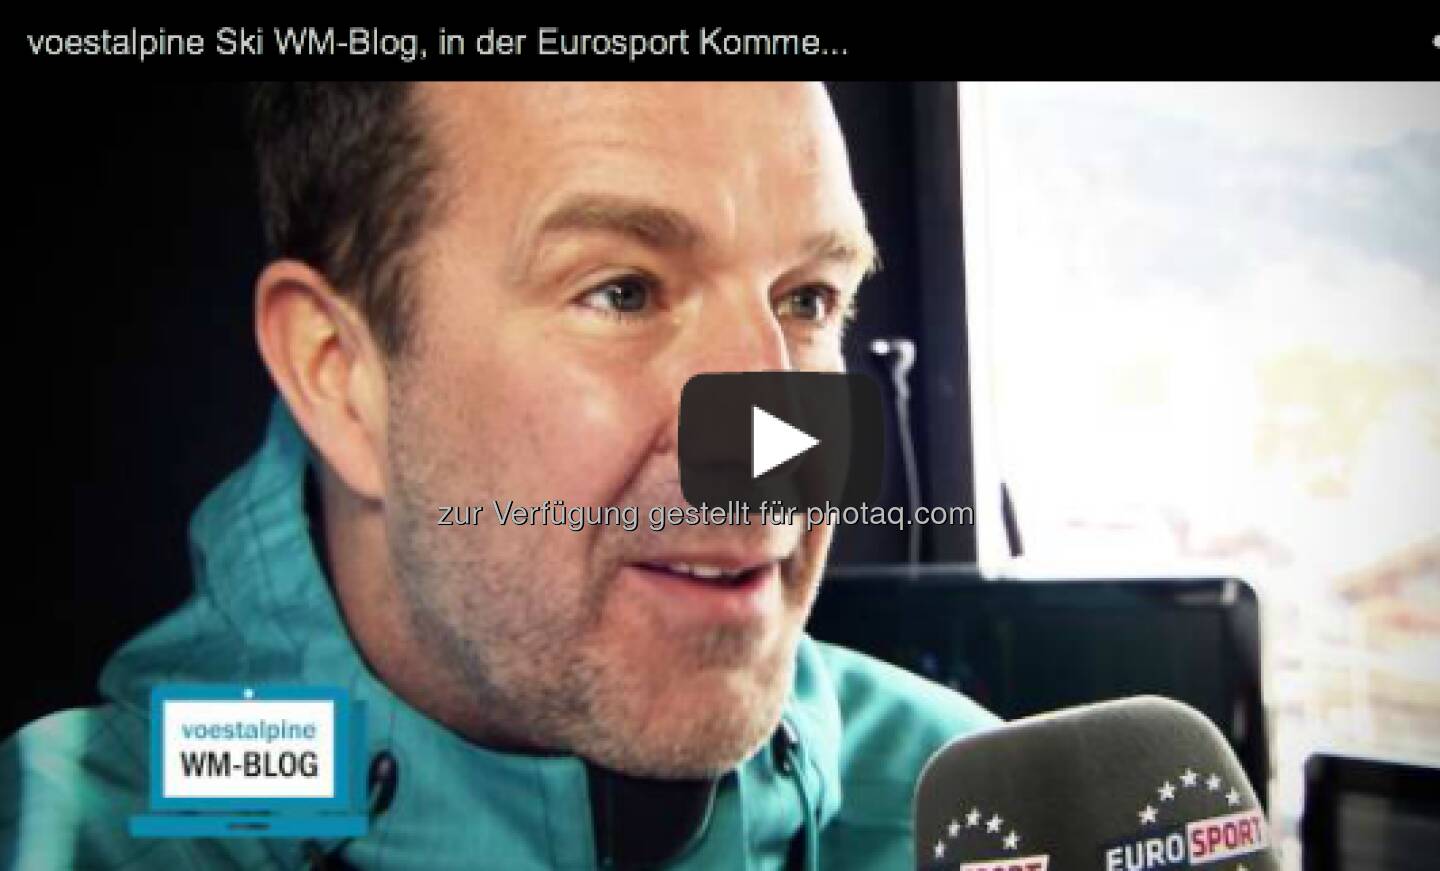 Eurosport-Kommentar Guido Heuber tippte für die Herren-Abfahrt auf .... http://voestalpine-wm-blog.at/2013/02/09/die-tipps-des-eurosport-kommentatoren/#.URZfzo7aK_Q